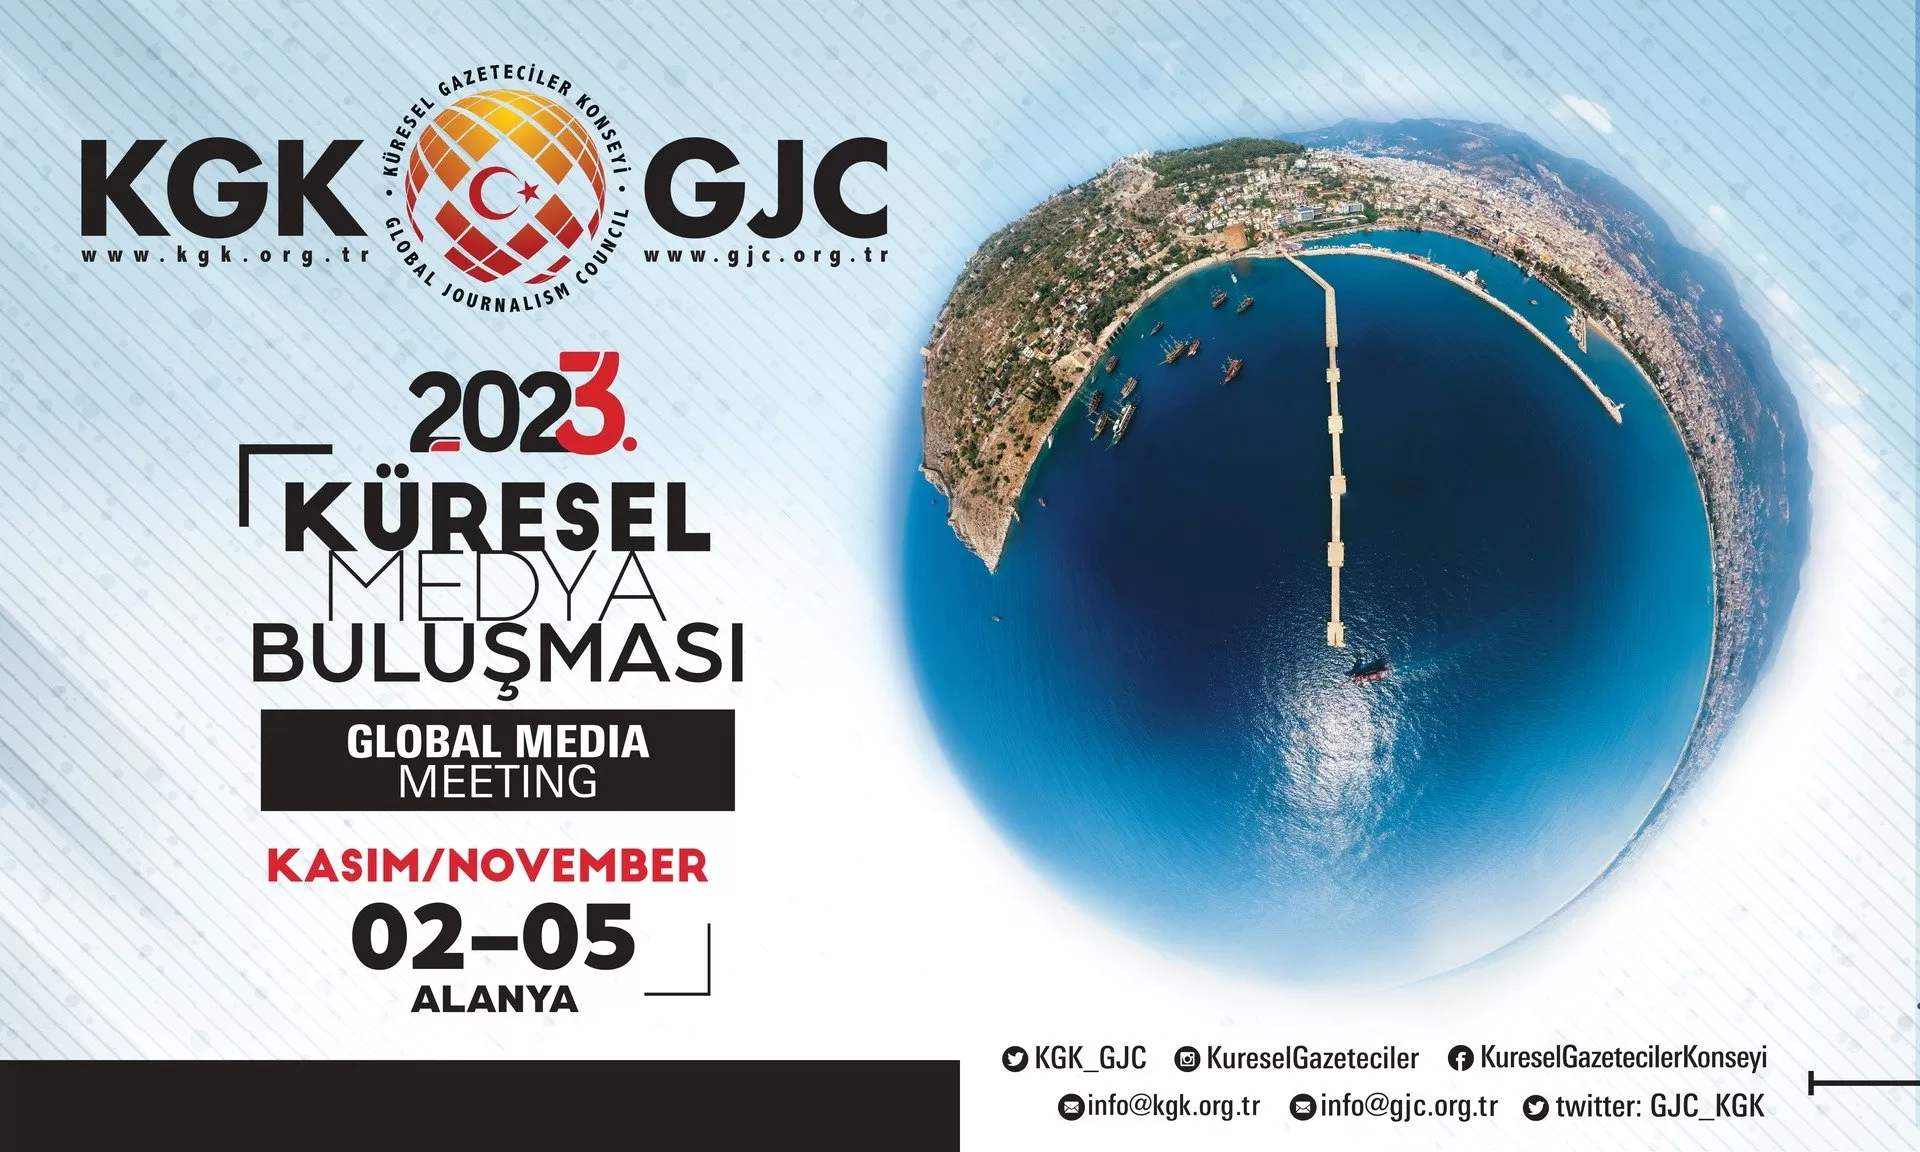 3. Küresel Buluşma 2-5 Kasım’da Alanya’da